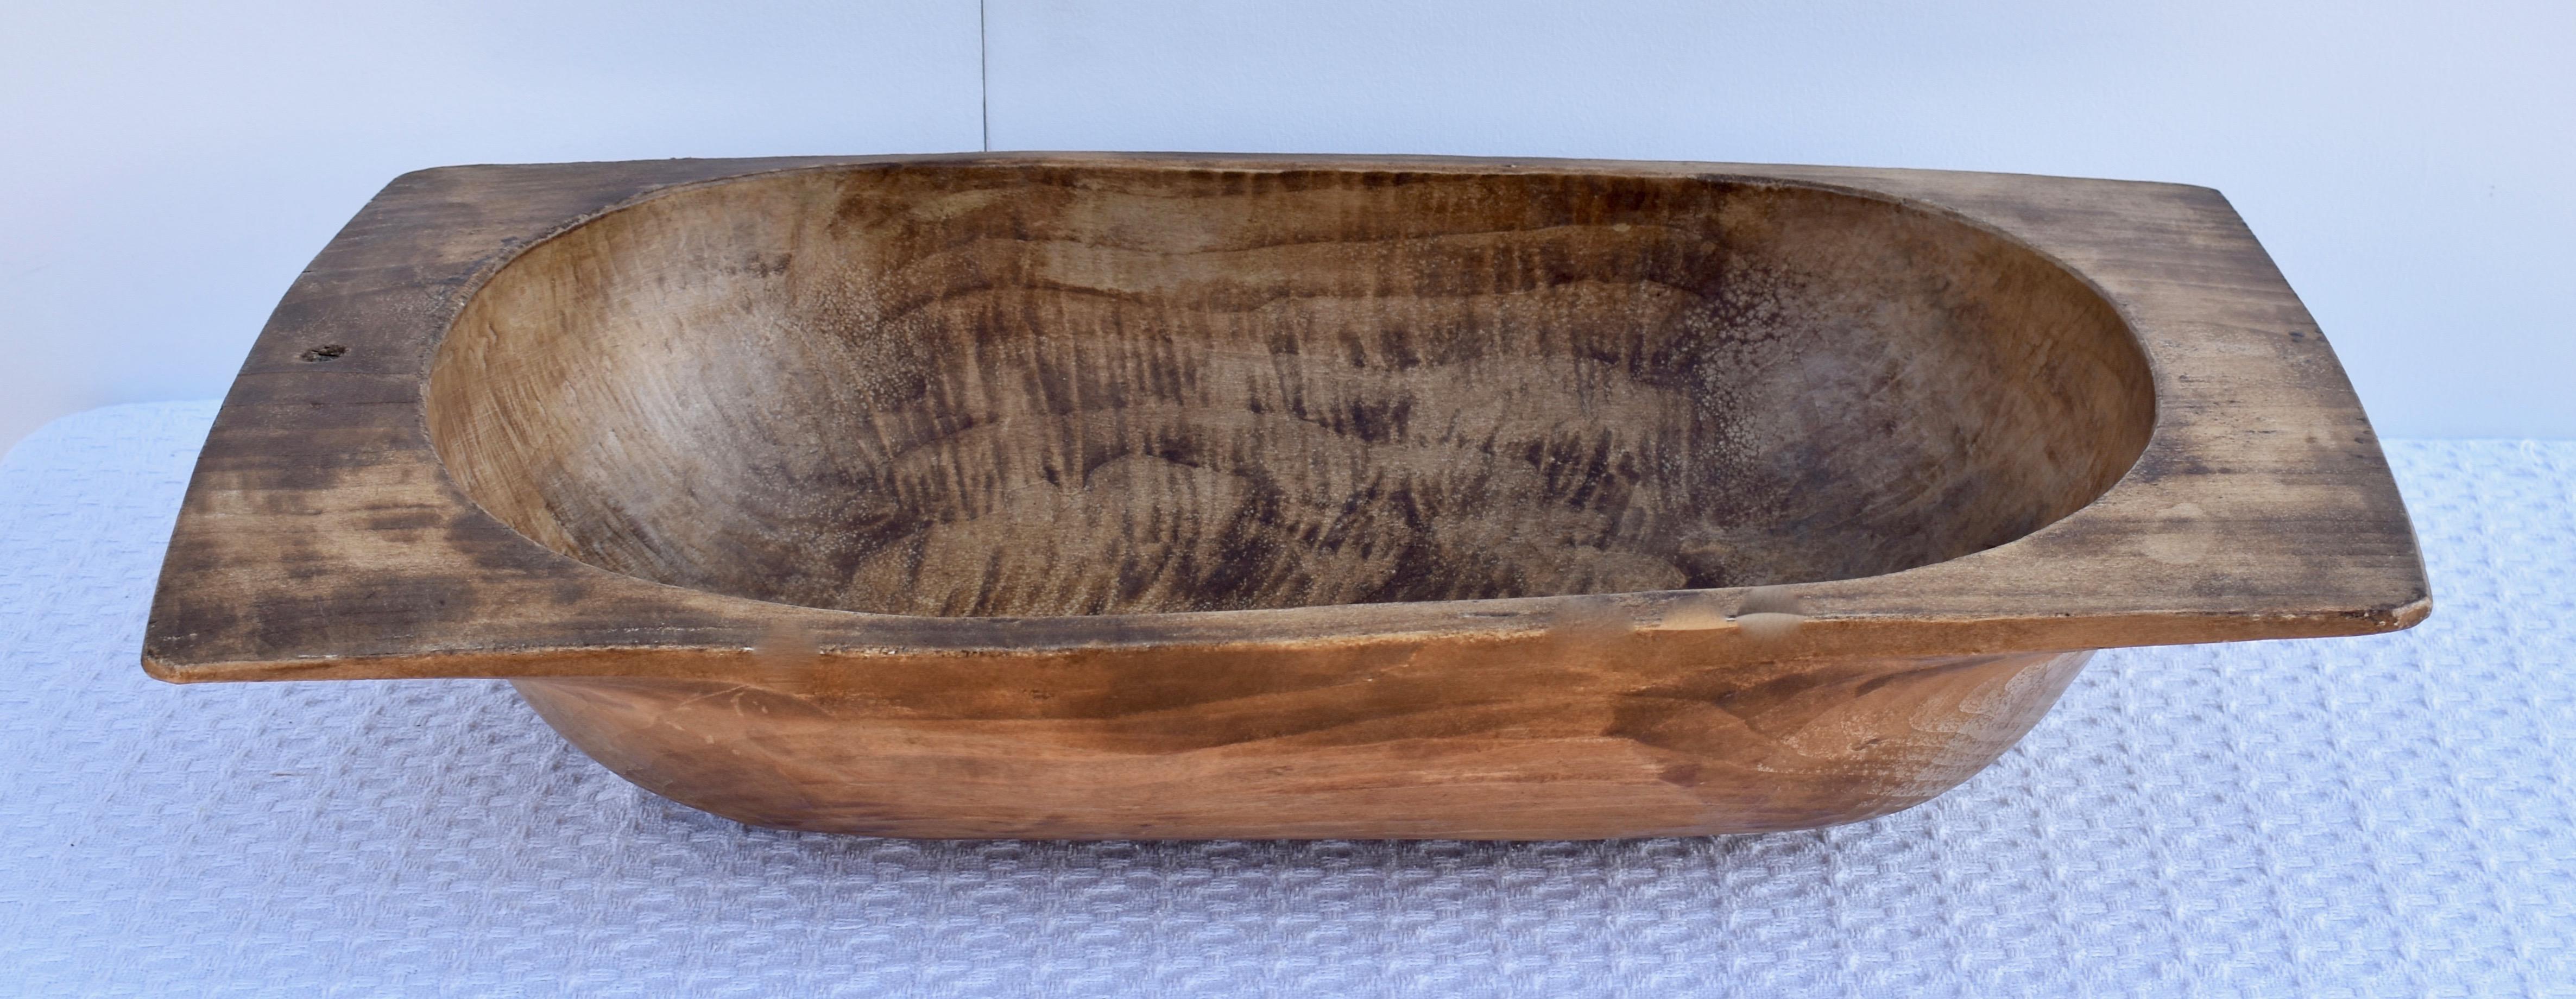 Unsere antiken europäischen Teigschüsseln aus Holz werden von Hand aus ganzen gespaltenen Stämmen gehauen. Sie zeichnen sich durch eine bemerkenswerte Handarbeit und eine schöne Patina aus, besonders wenn man sie von der Unterseite betrachtet. Sie